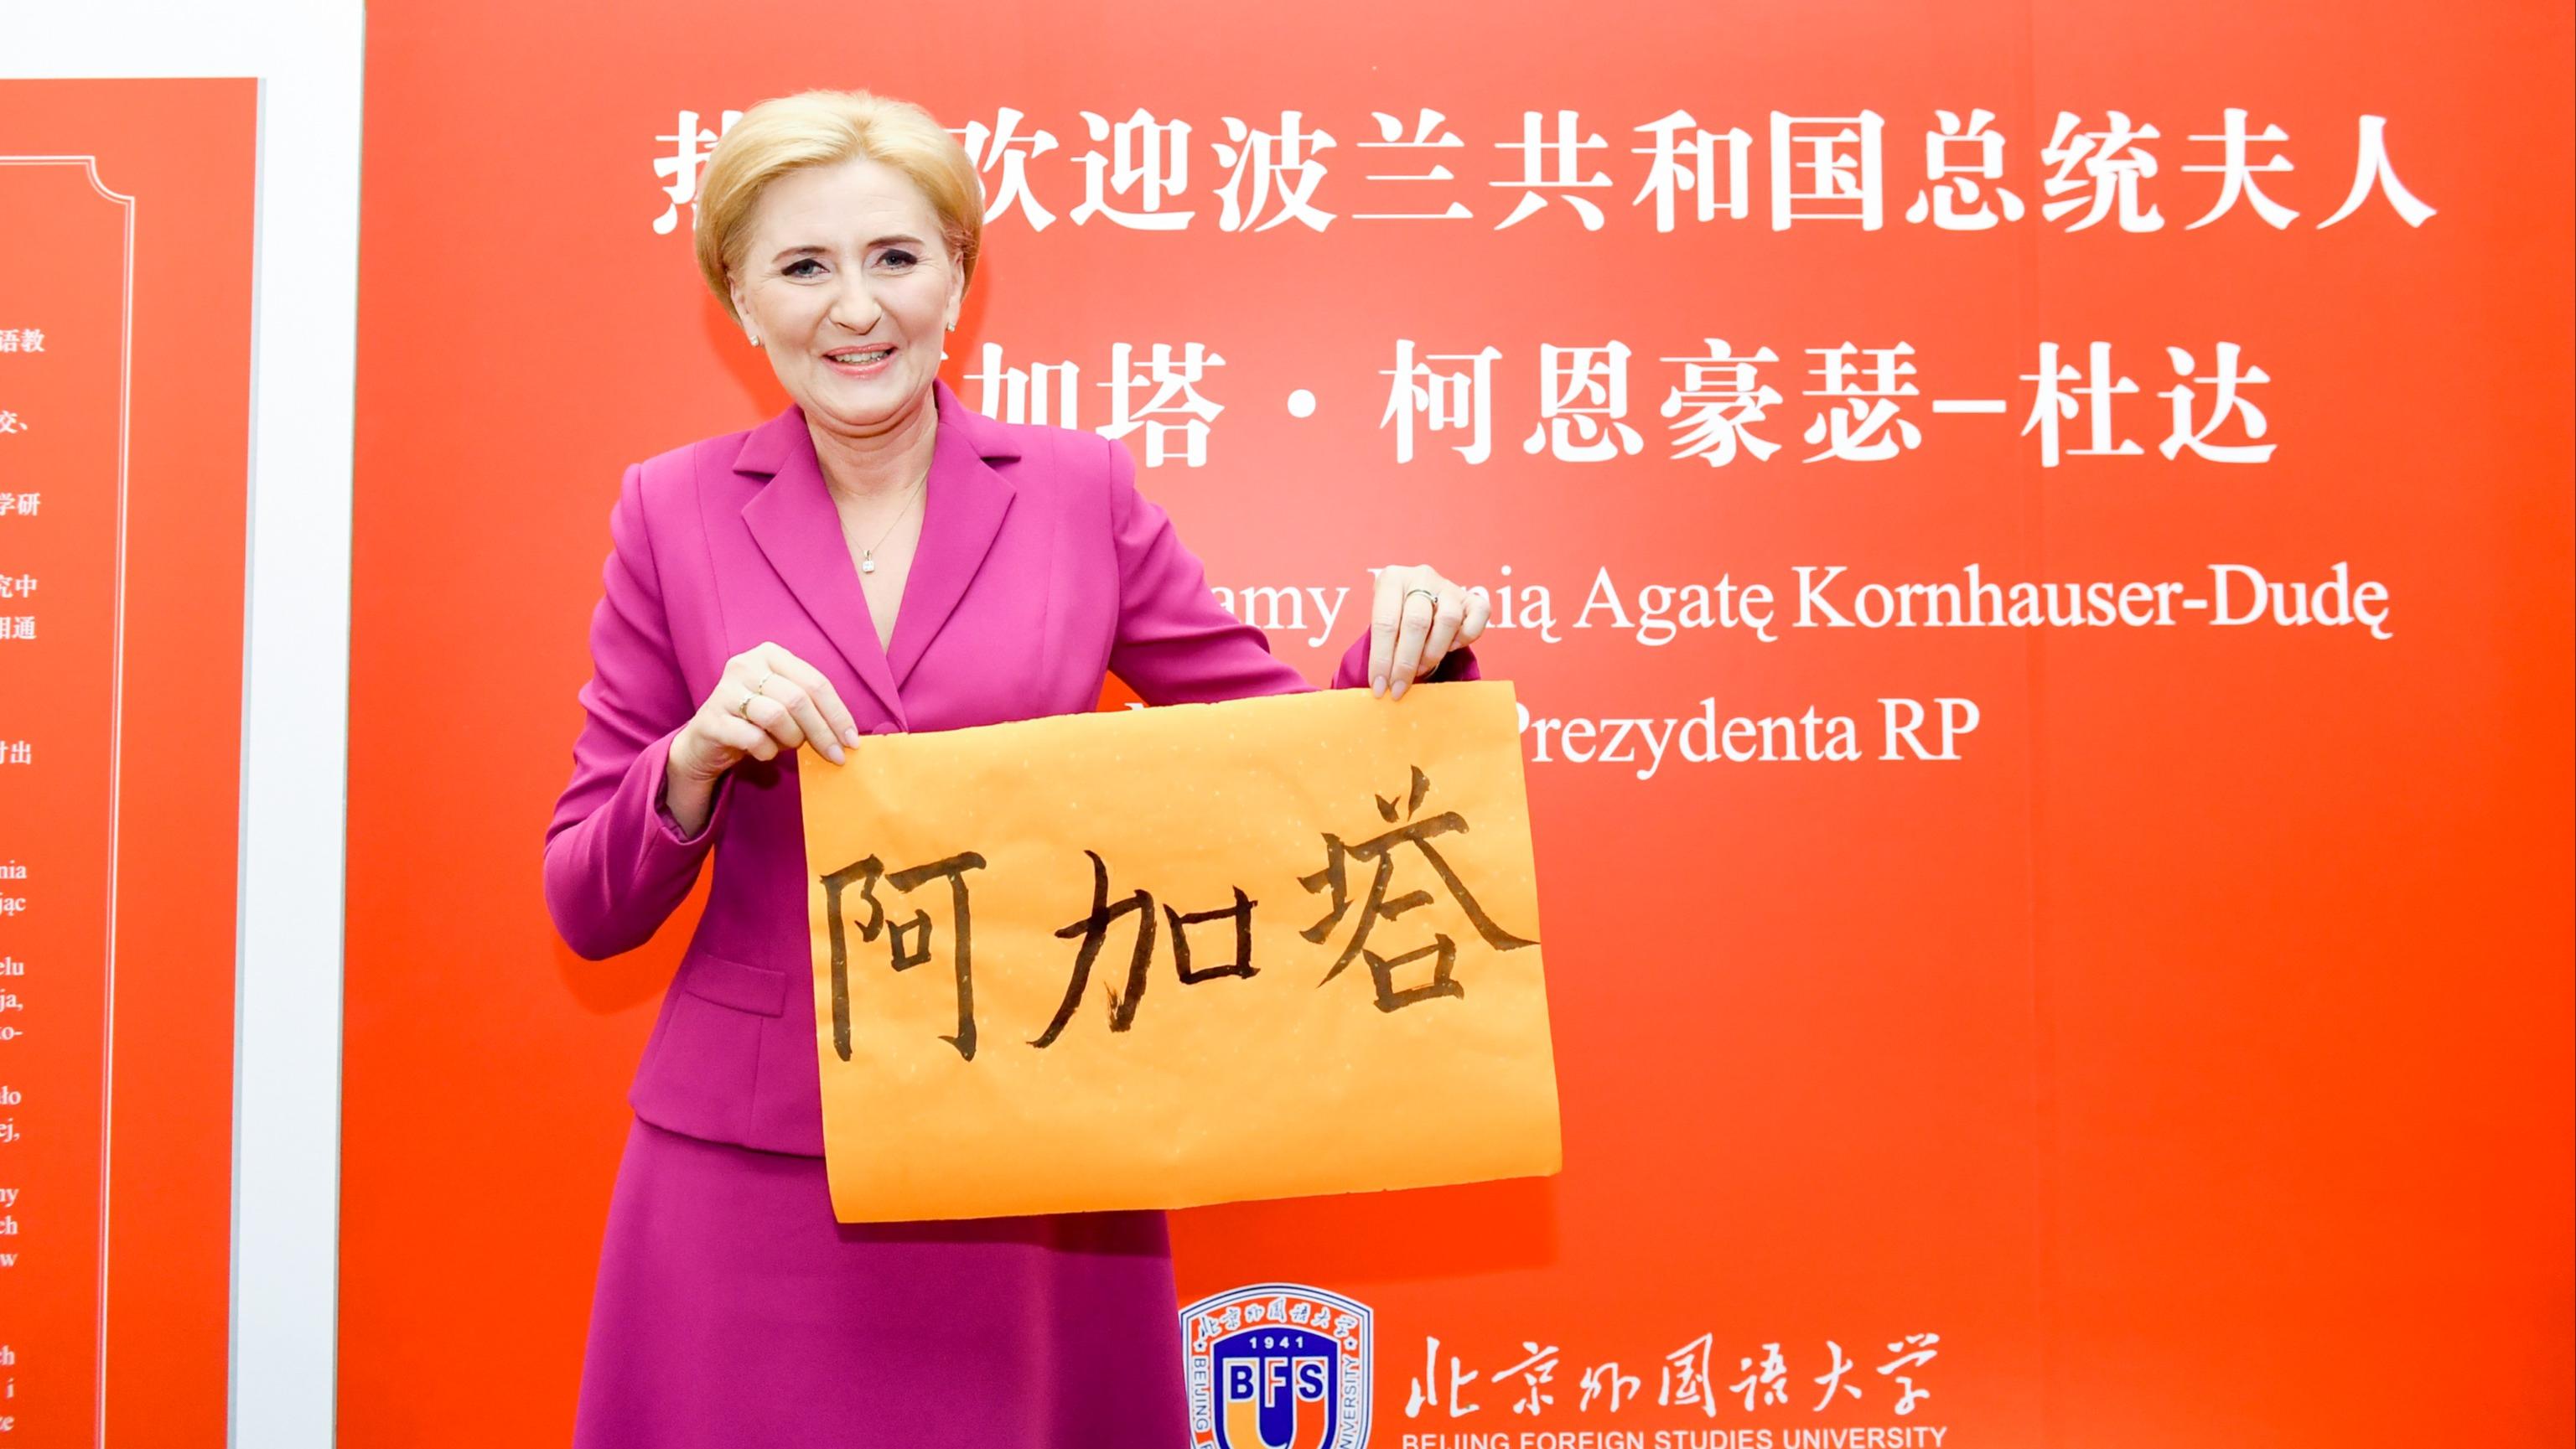  Małżonka Prezydenta RP z wizytą na Pekińskim Uniwersytecie Języków Obcych